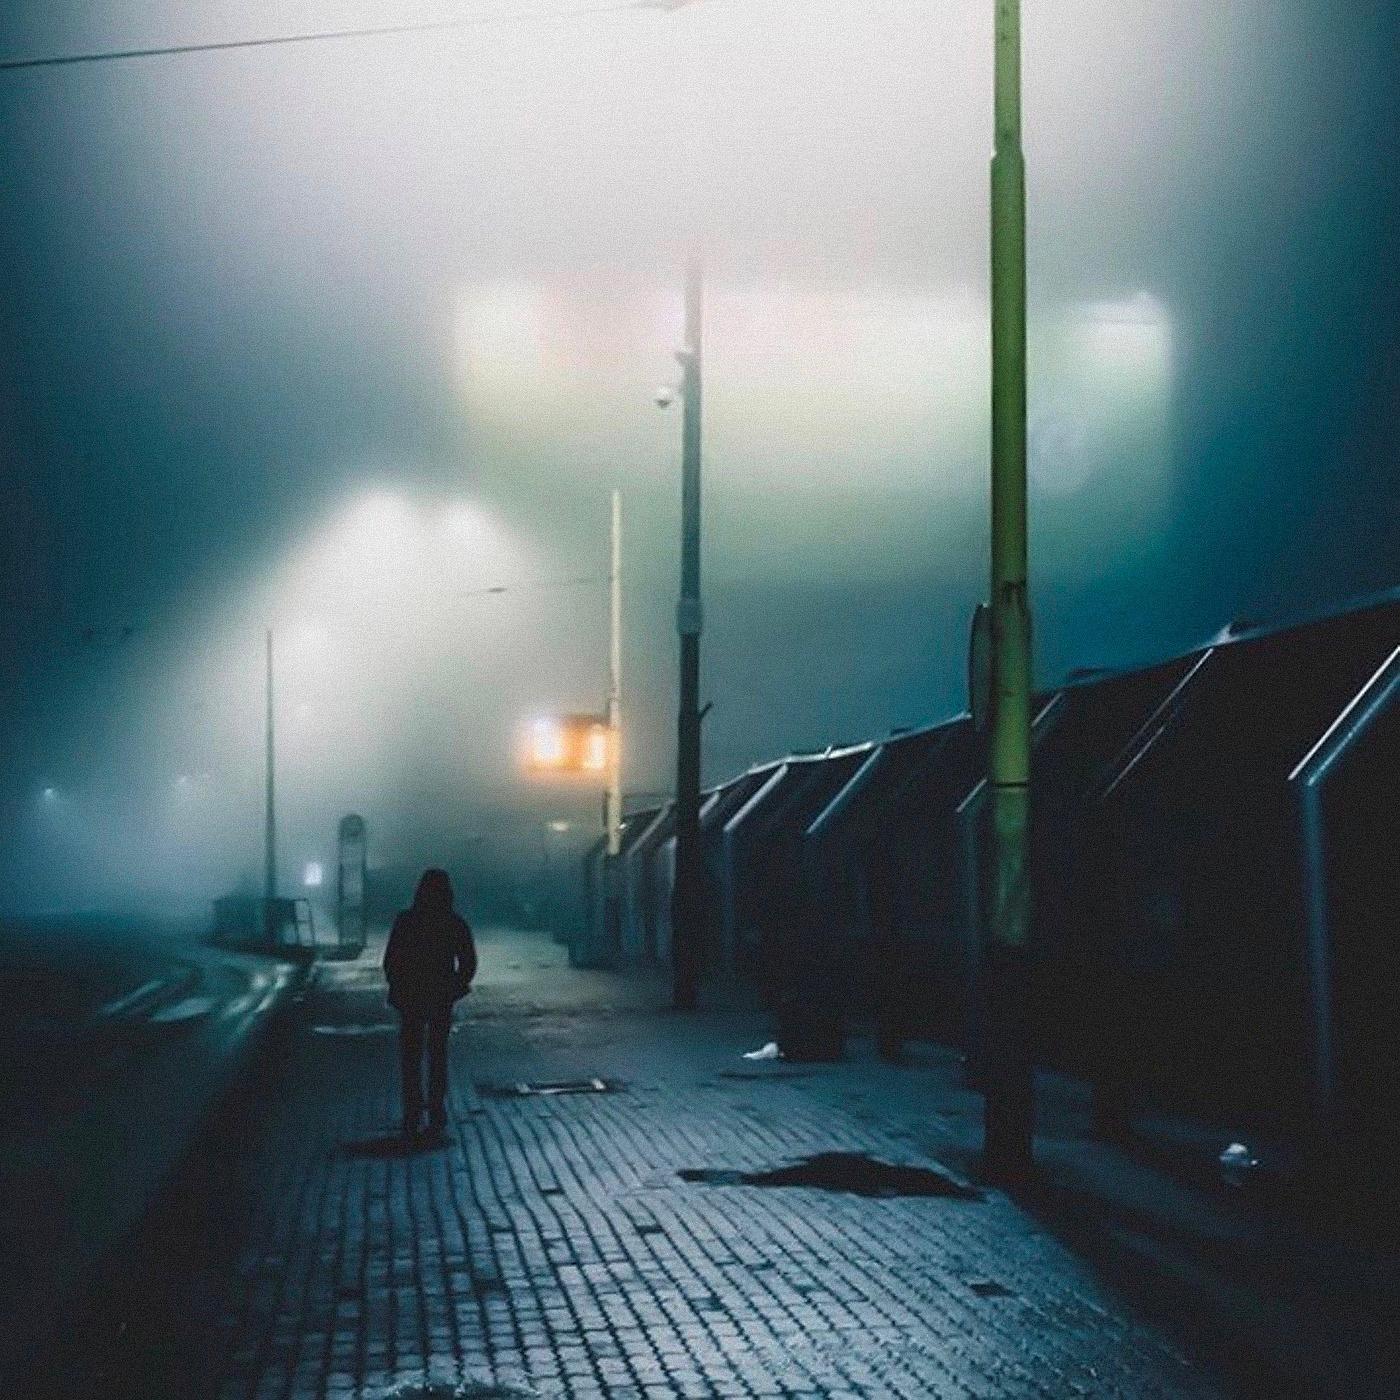 Ночь какая ночь ремикс. Ночь туманная neywein. Ночь улица туман. Атмосферные обложки туманная ночь. Ночь туманная текст.